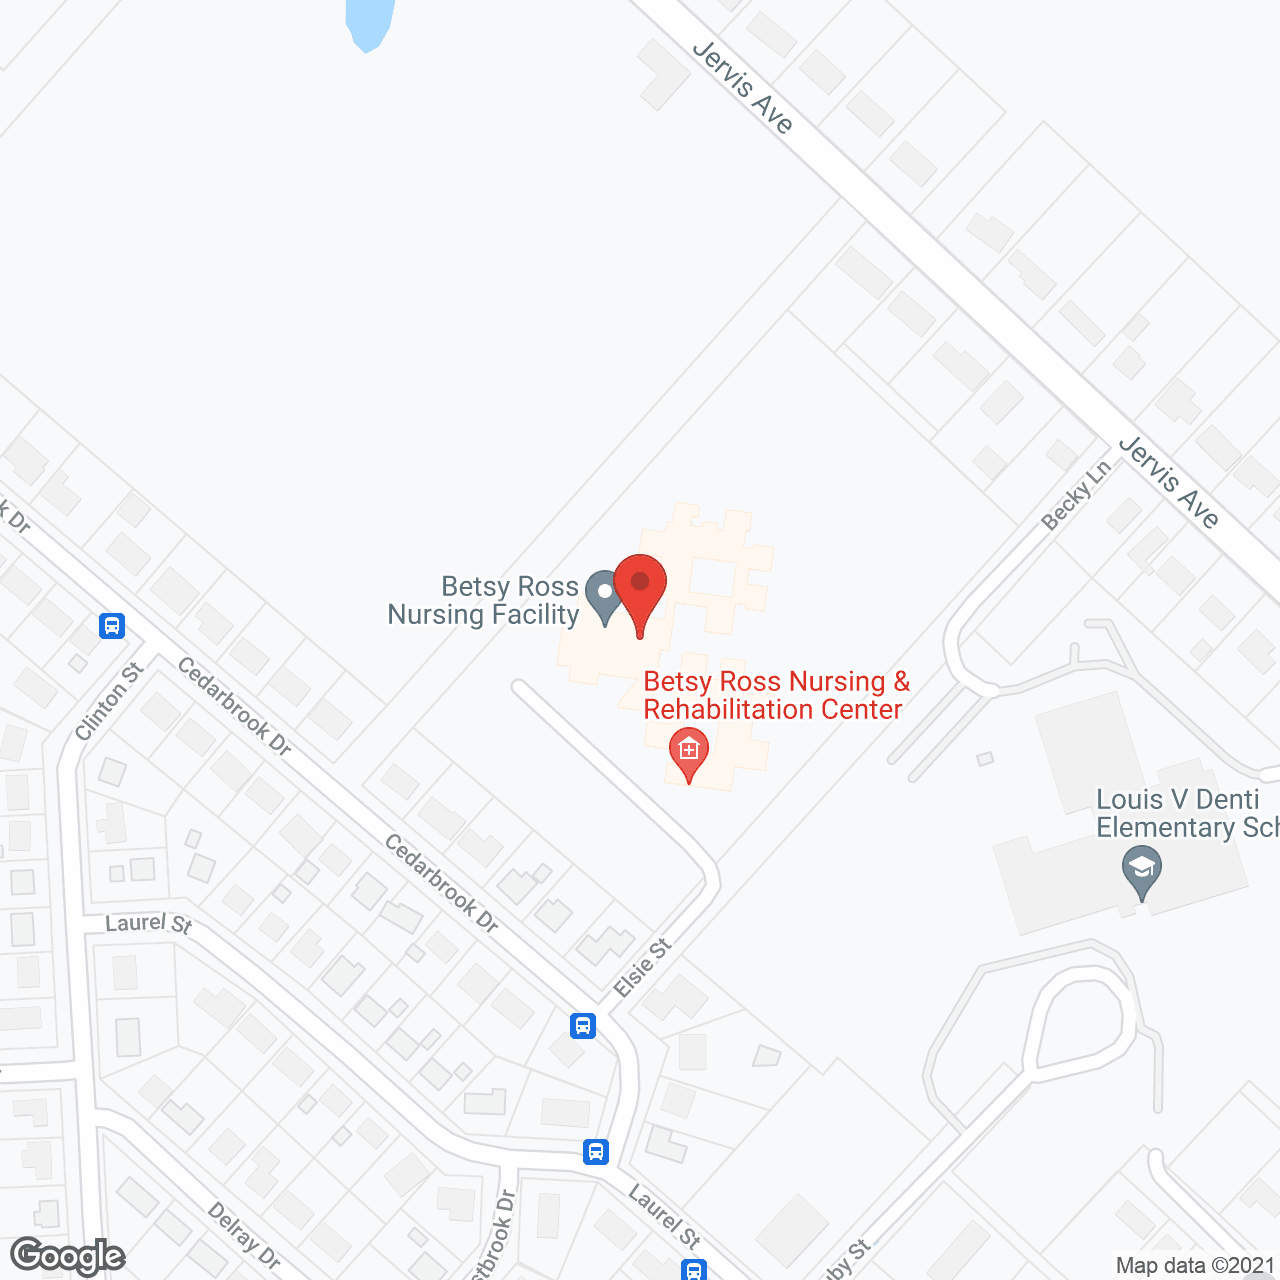 Betsy Ross Nursing Facility in google map